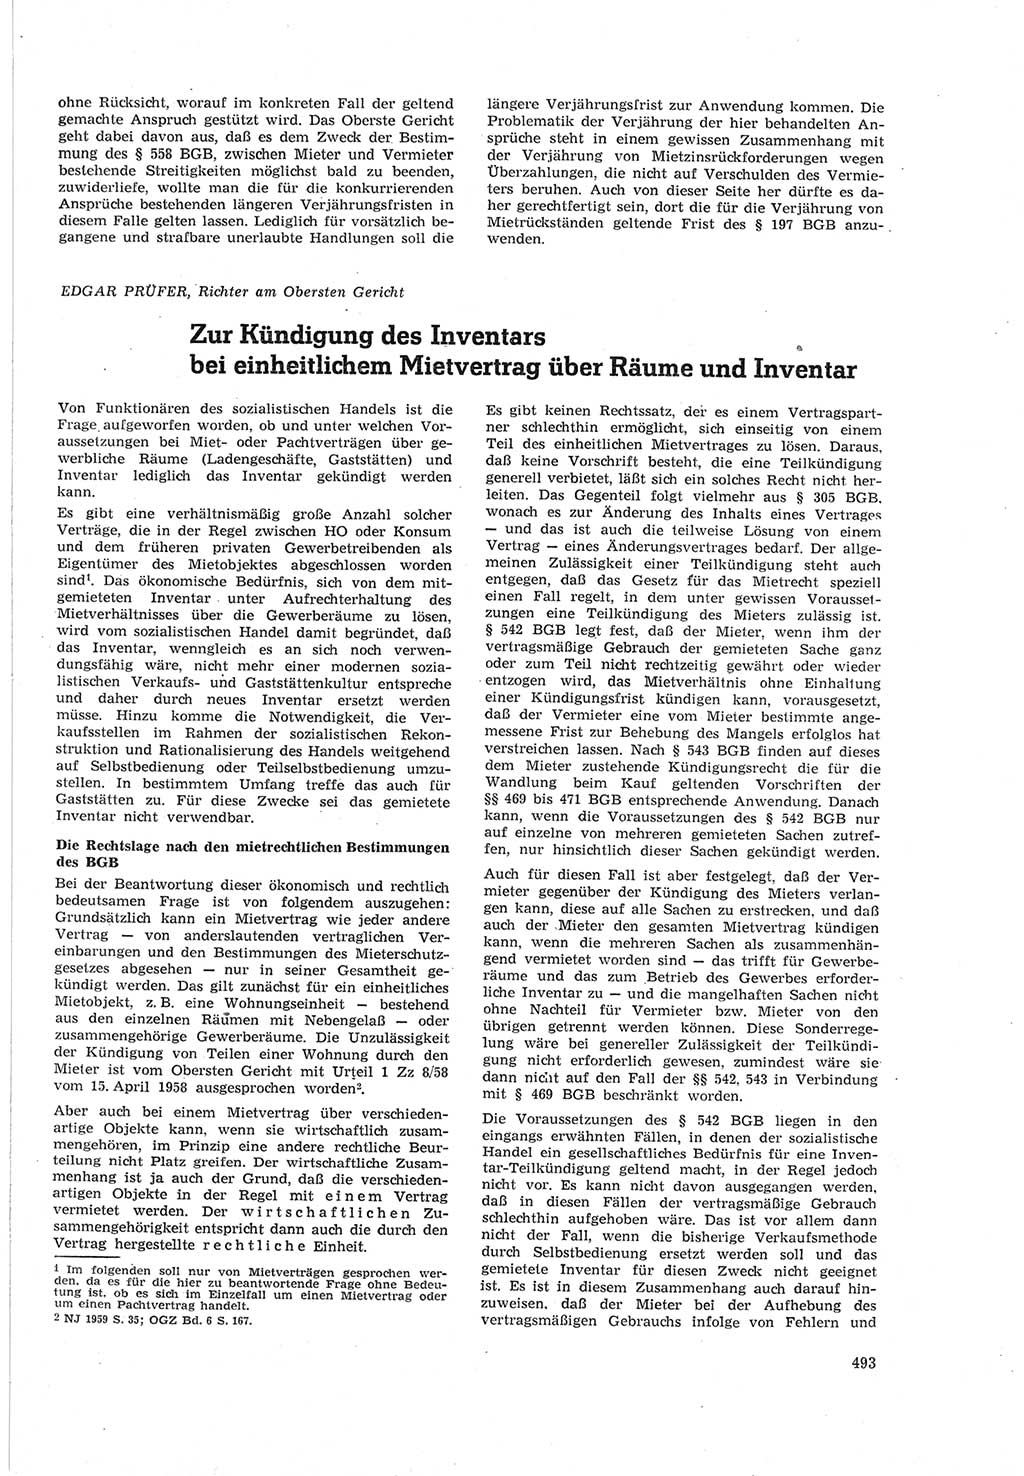 Neue Justiz (NJ), Zeitschrift für Recht und Rechtswissenschaft [Deutsche Demokratische Republik (DDR)], 18. Jahrgang 1964, Seite 493 (NJ DDR 1964, S. 493)